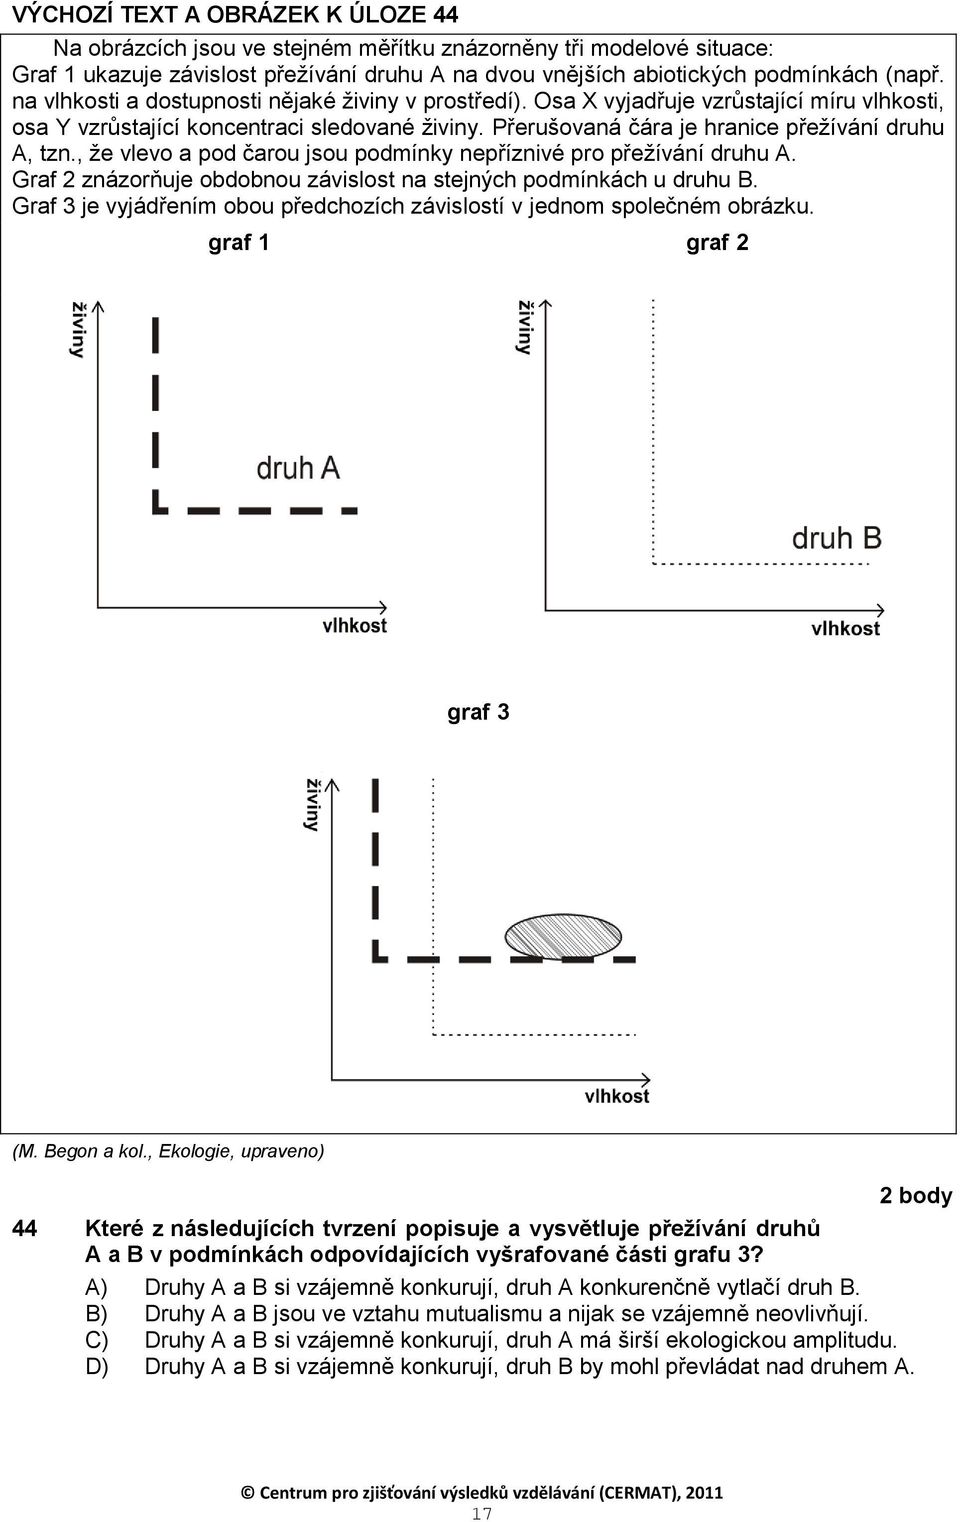 , ţe vlevo a pod čarou jsou podmínky nepříznivé pro přeţívání druhu A. Graf 2 znázorňuje obdobnou závislost na stejných podmínkách u druhu B.